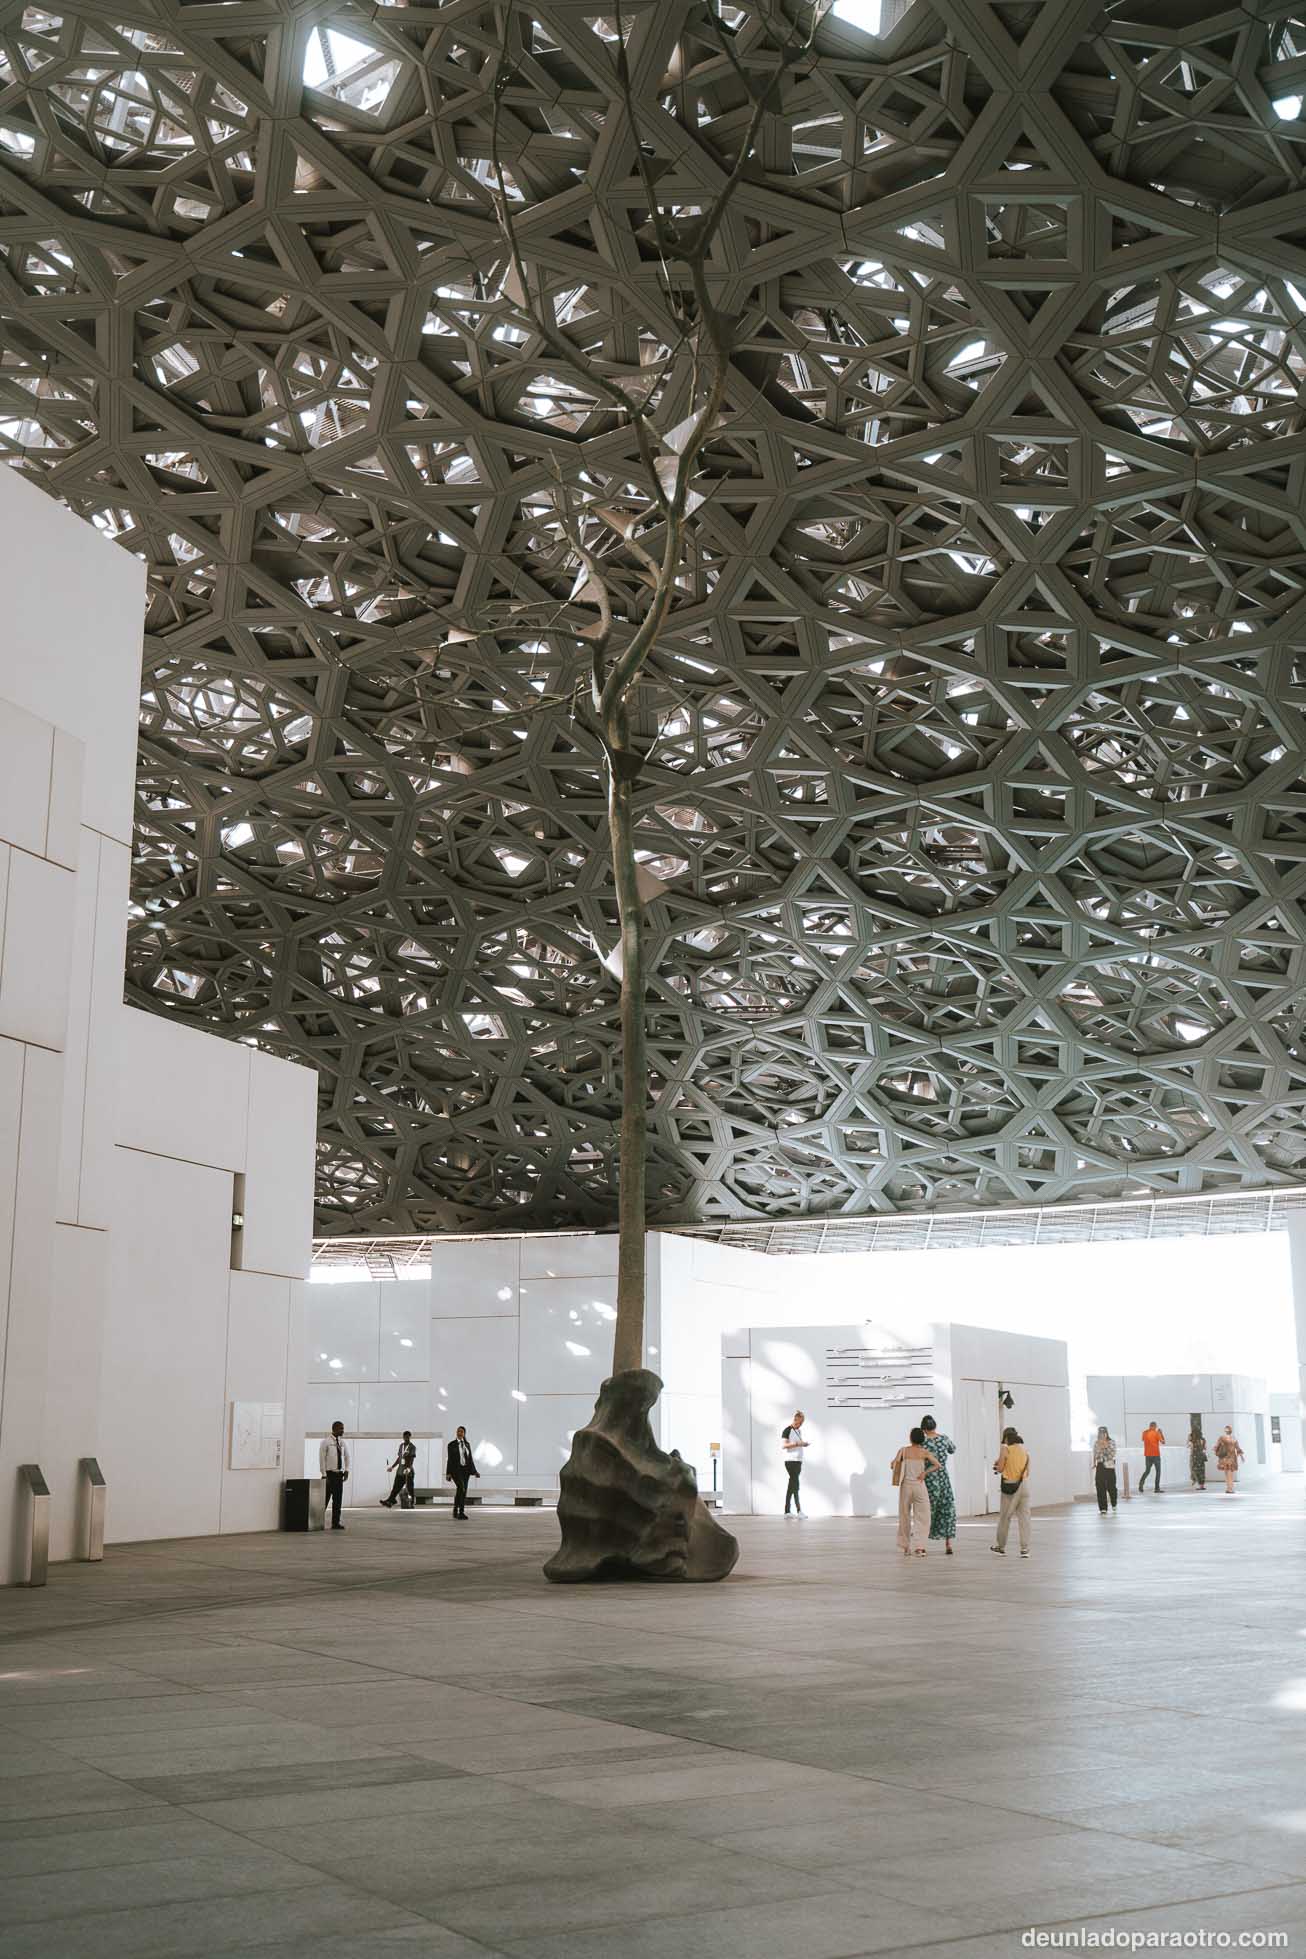 Una de las mejores cosas que hacer en Abu Dhabi en 1 día, es Visitar el Louvre Abu Dhabi